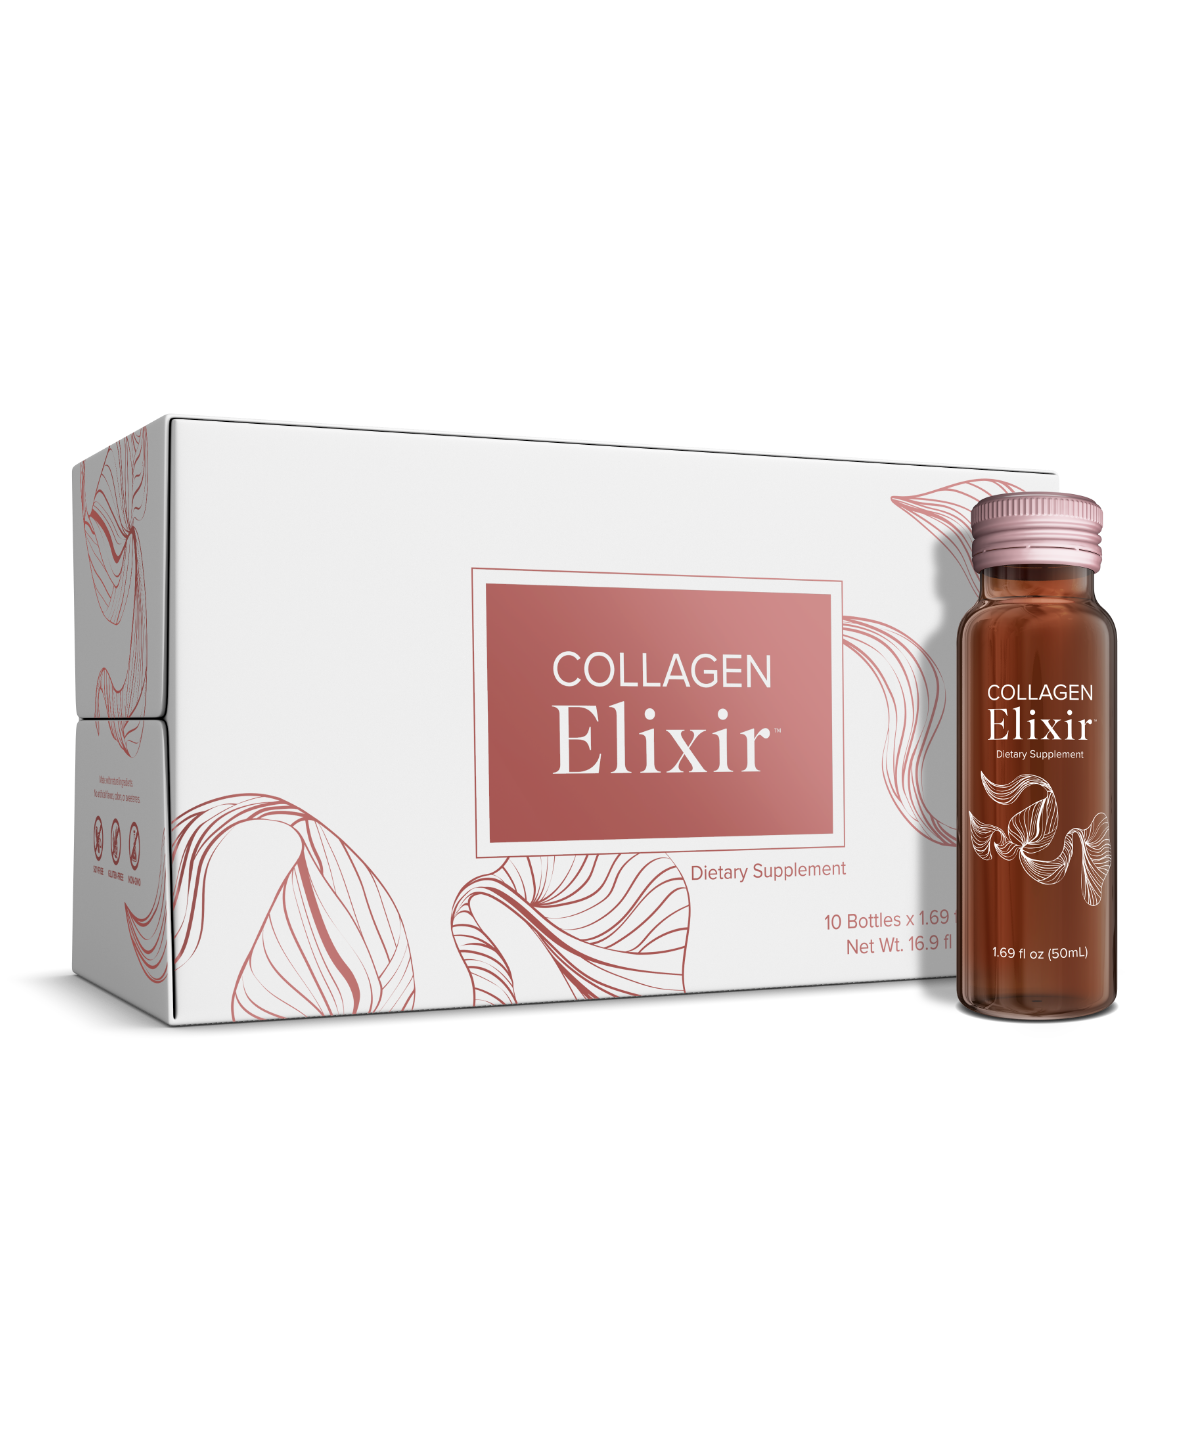 Collagen Elixir - Paket mit 10 Flaschen à 50ml